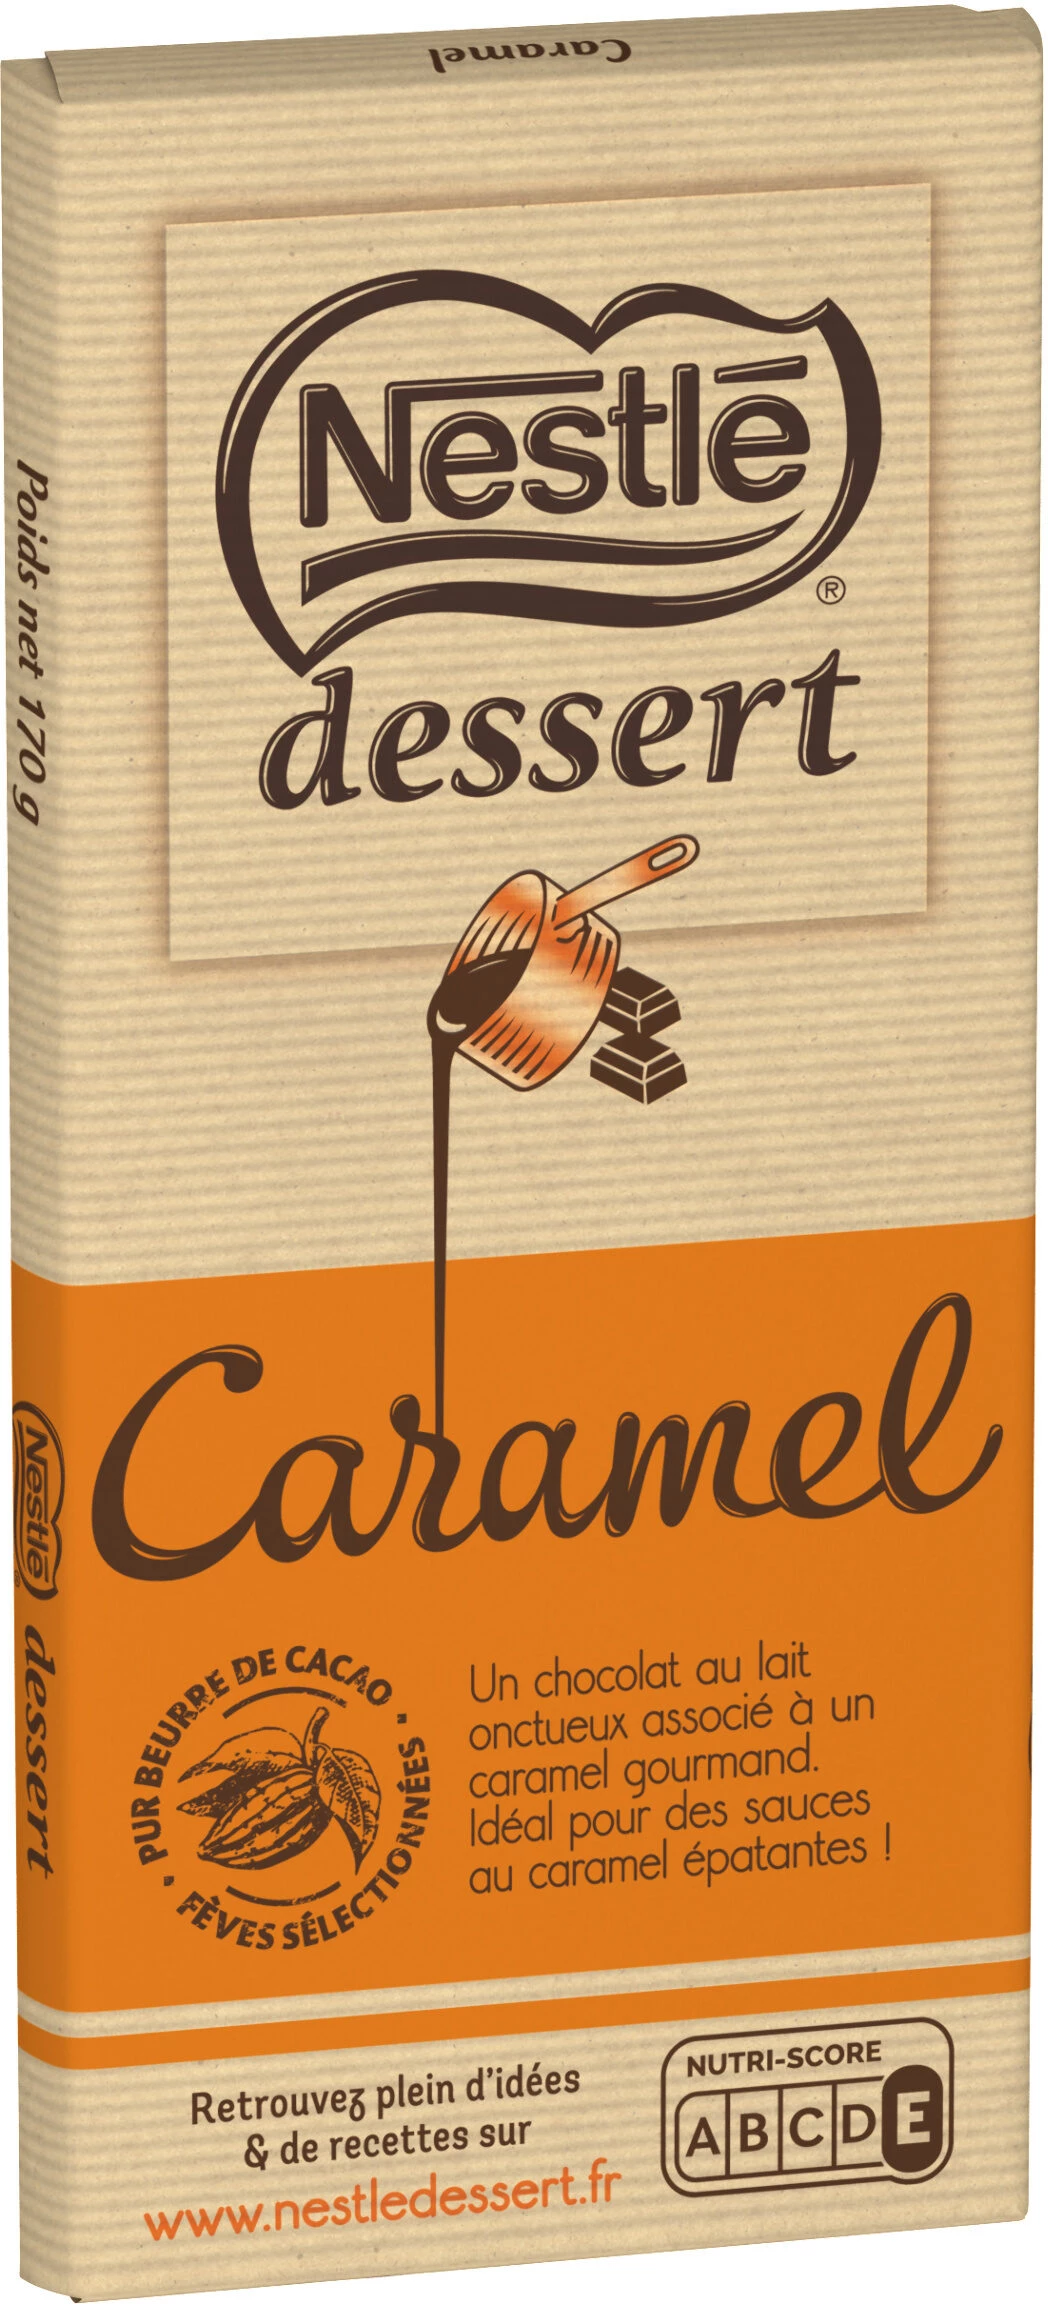 170g Dessert Karamell Nestle